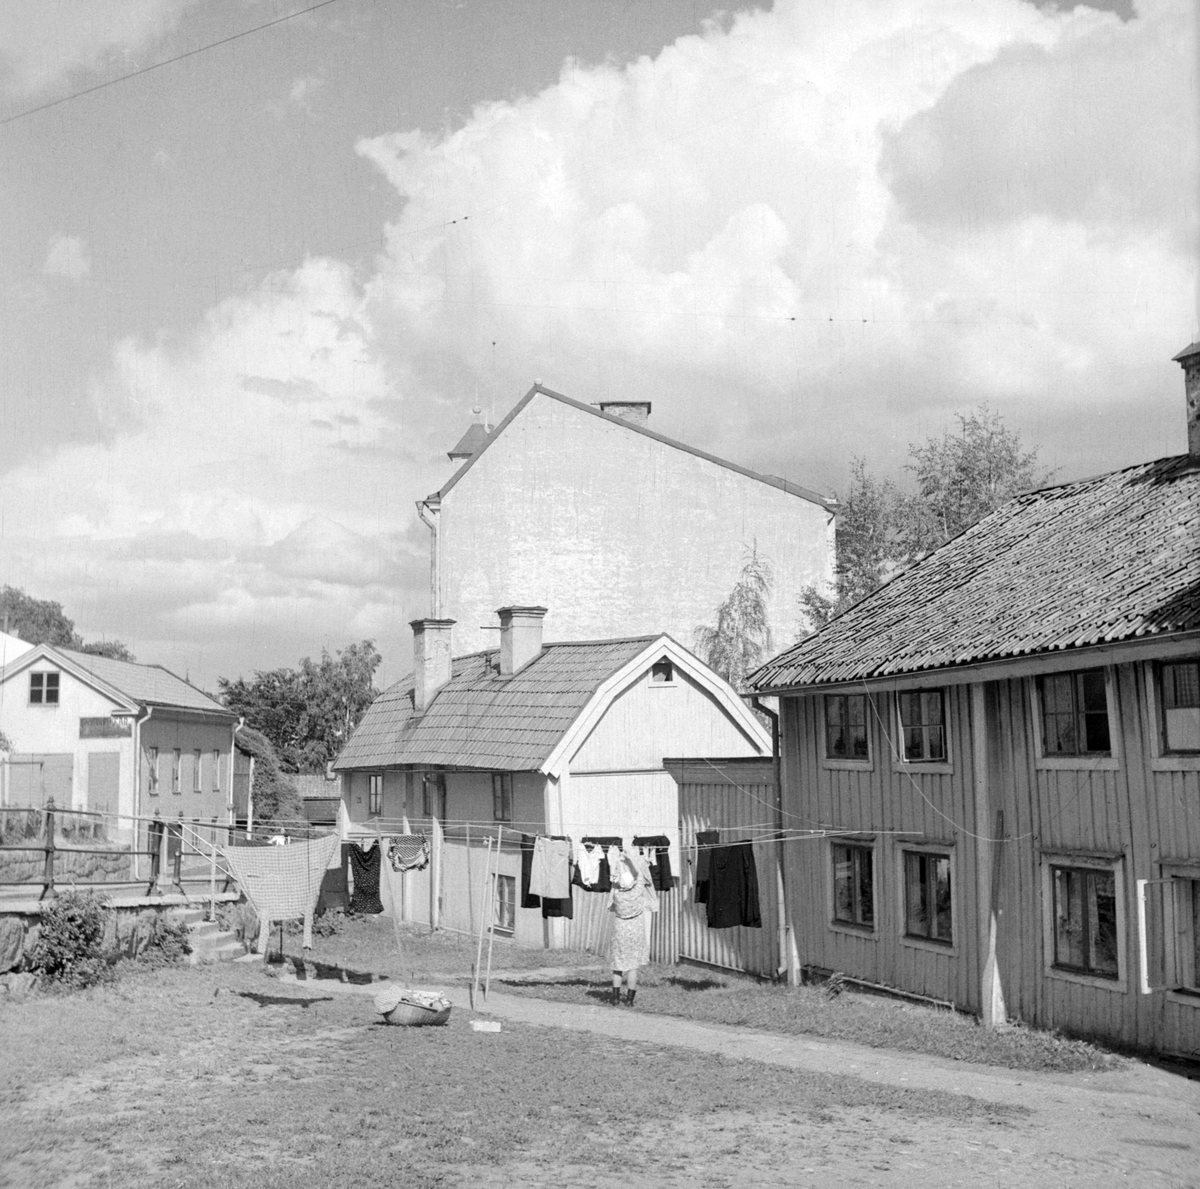 Miljön vid Nygatans övre del. Husen till höger bar vid tiden adresserna Nygatan 62 följd av nummer 58. Deras vinkelställda lägen mot gatan förklaras av att de i äldre tid låg utmed Sankt Korsgatans västra del, som lades igen när Nygatan förlängdes under 1870-talet. Närmast den så kallade Anderska gården. Uppkallad efter konstnären Knut Ander (1873-1908), som växte upp i huset. Bostadshuset och tillhörande stall monterades ned 1954, för att året därpå återuppföras i Gamla Linköping. I huset med det brutna takfallet bodde länge systrarna Elin, Nanna och Sigrid Pettersson. Även detta hus kom vidare att flyttas till Gamla Linköping, där det stod återuppfört 1963 som Systrarna Petterssons gård.